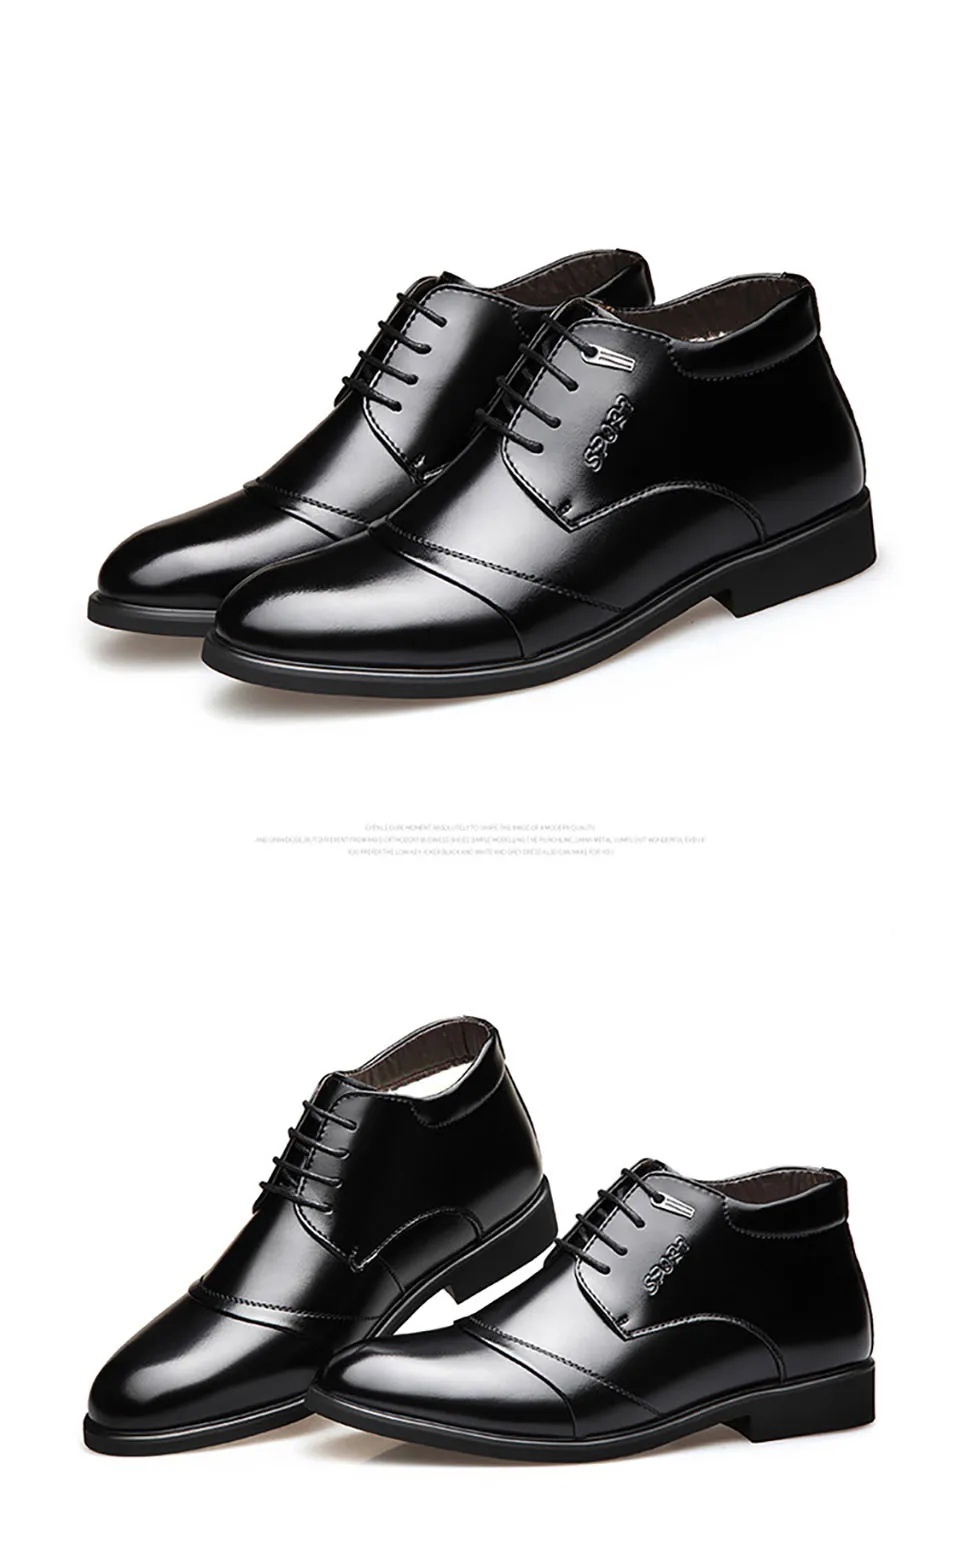 39-46 зимние ботинки из кожи Удобная теплая обувь мужские зимние модельные туфли# NX1522